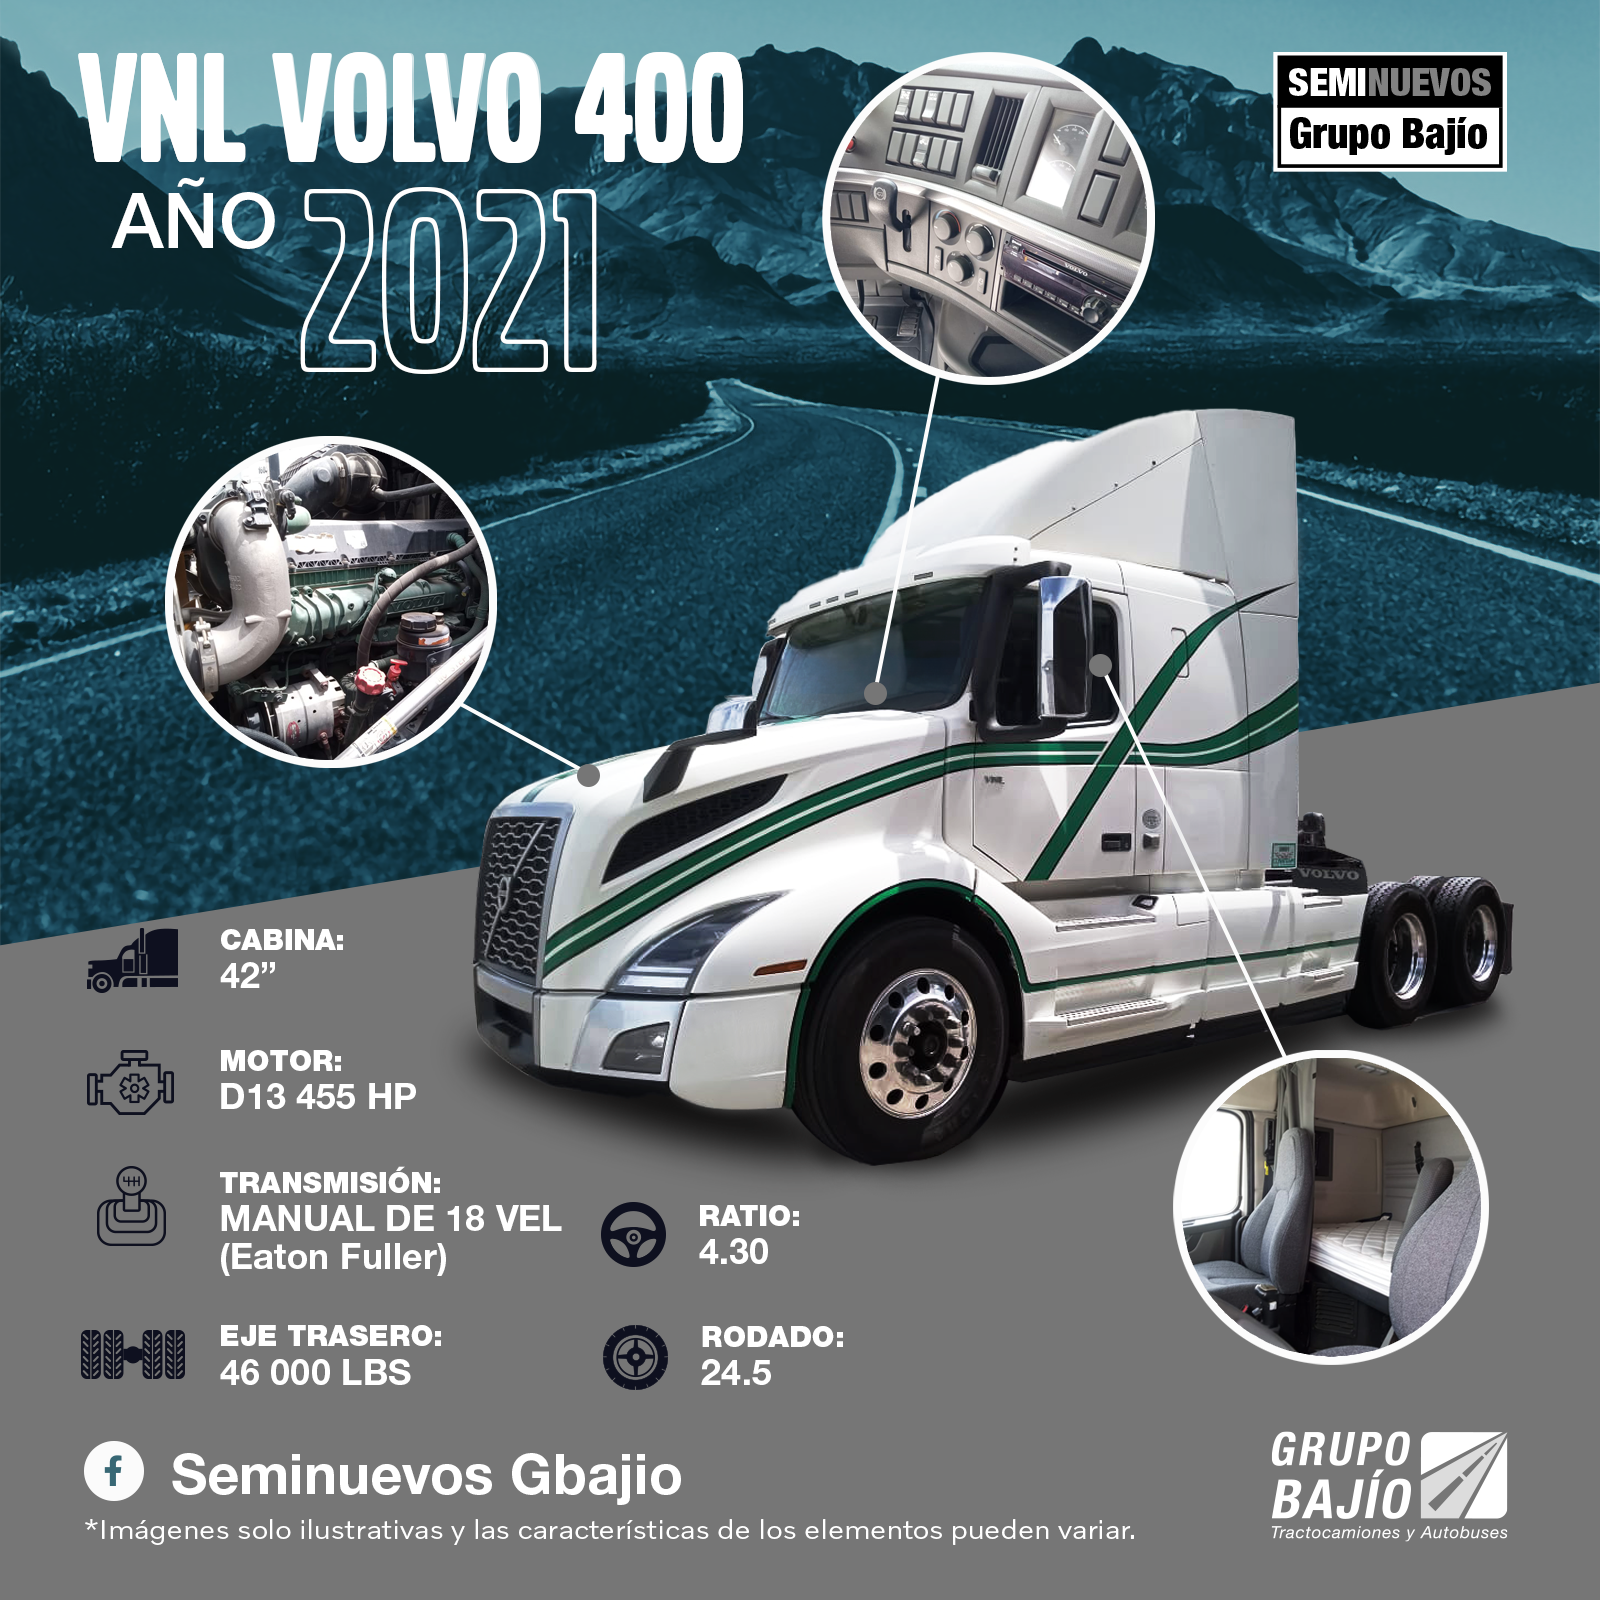 Volvo 400 VNL 2021